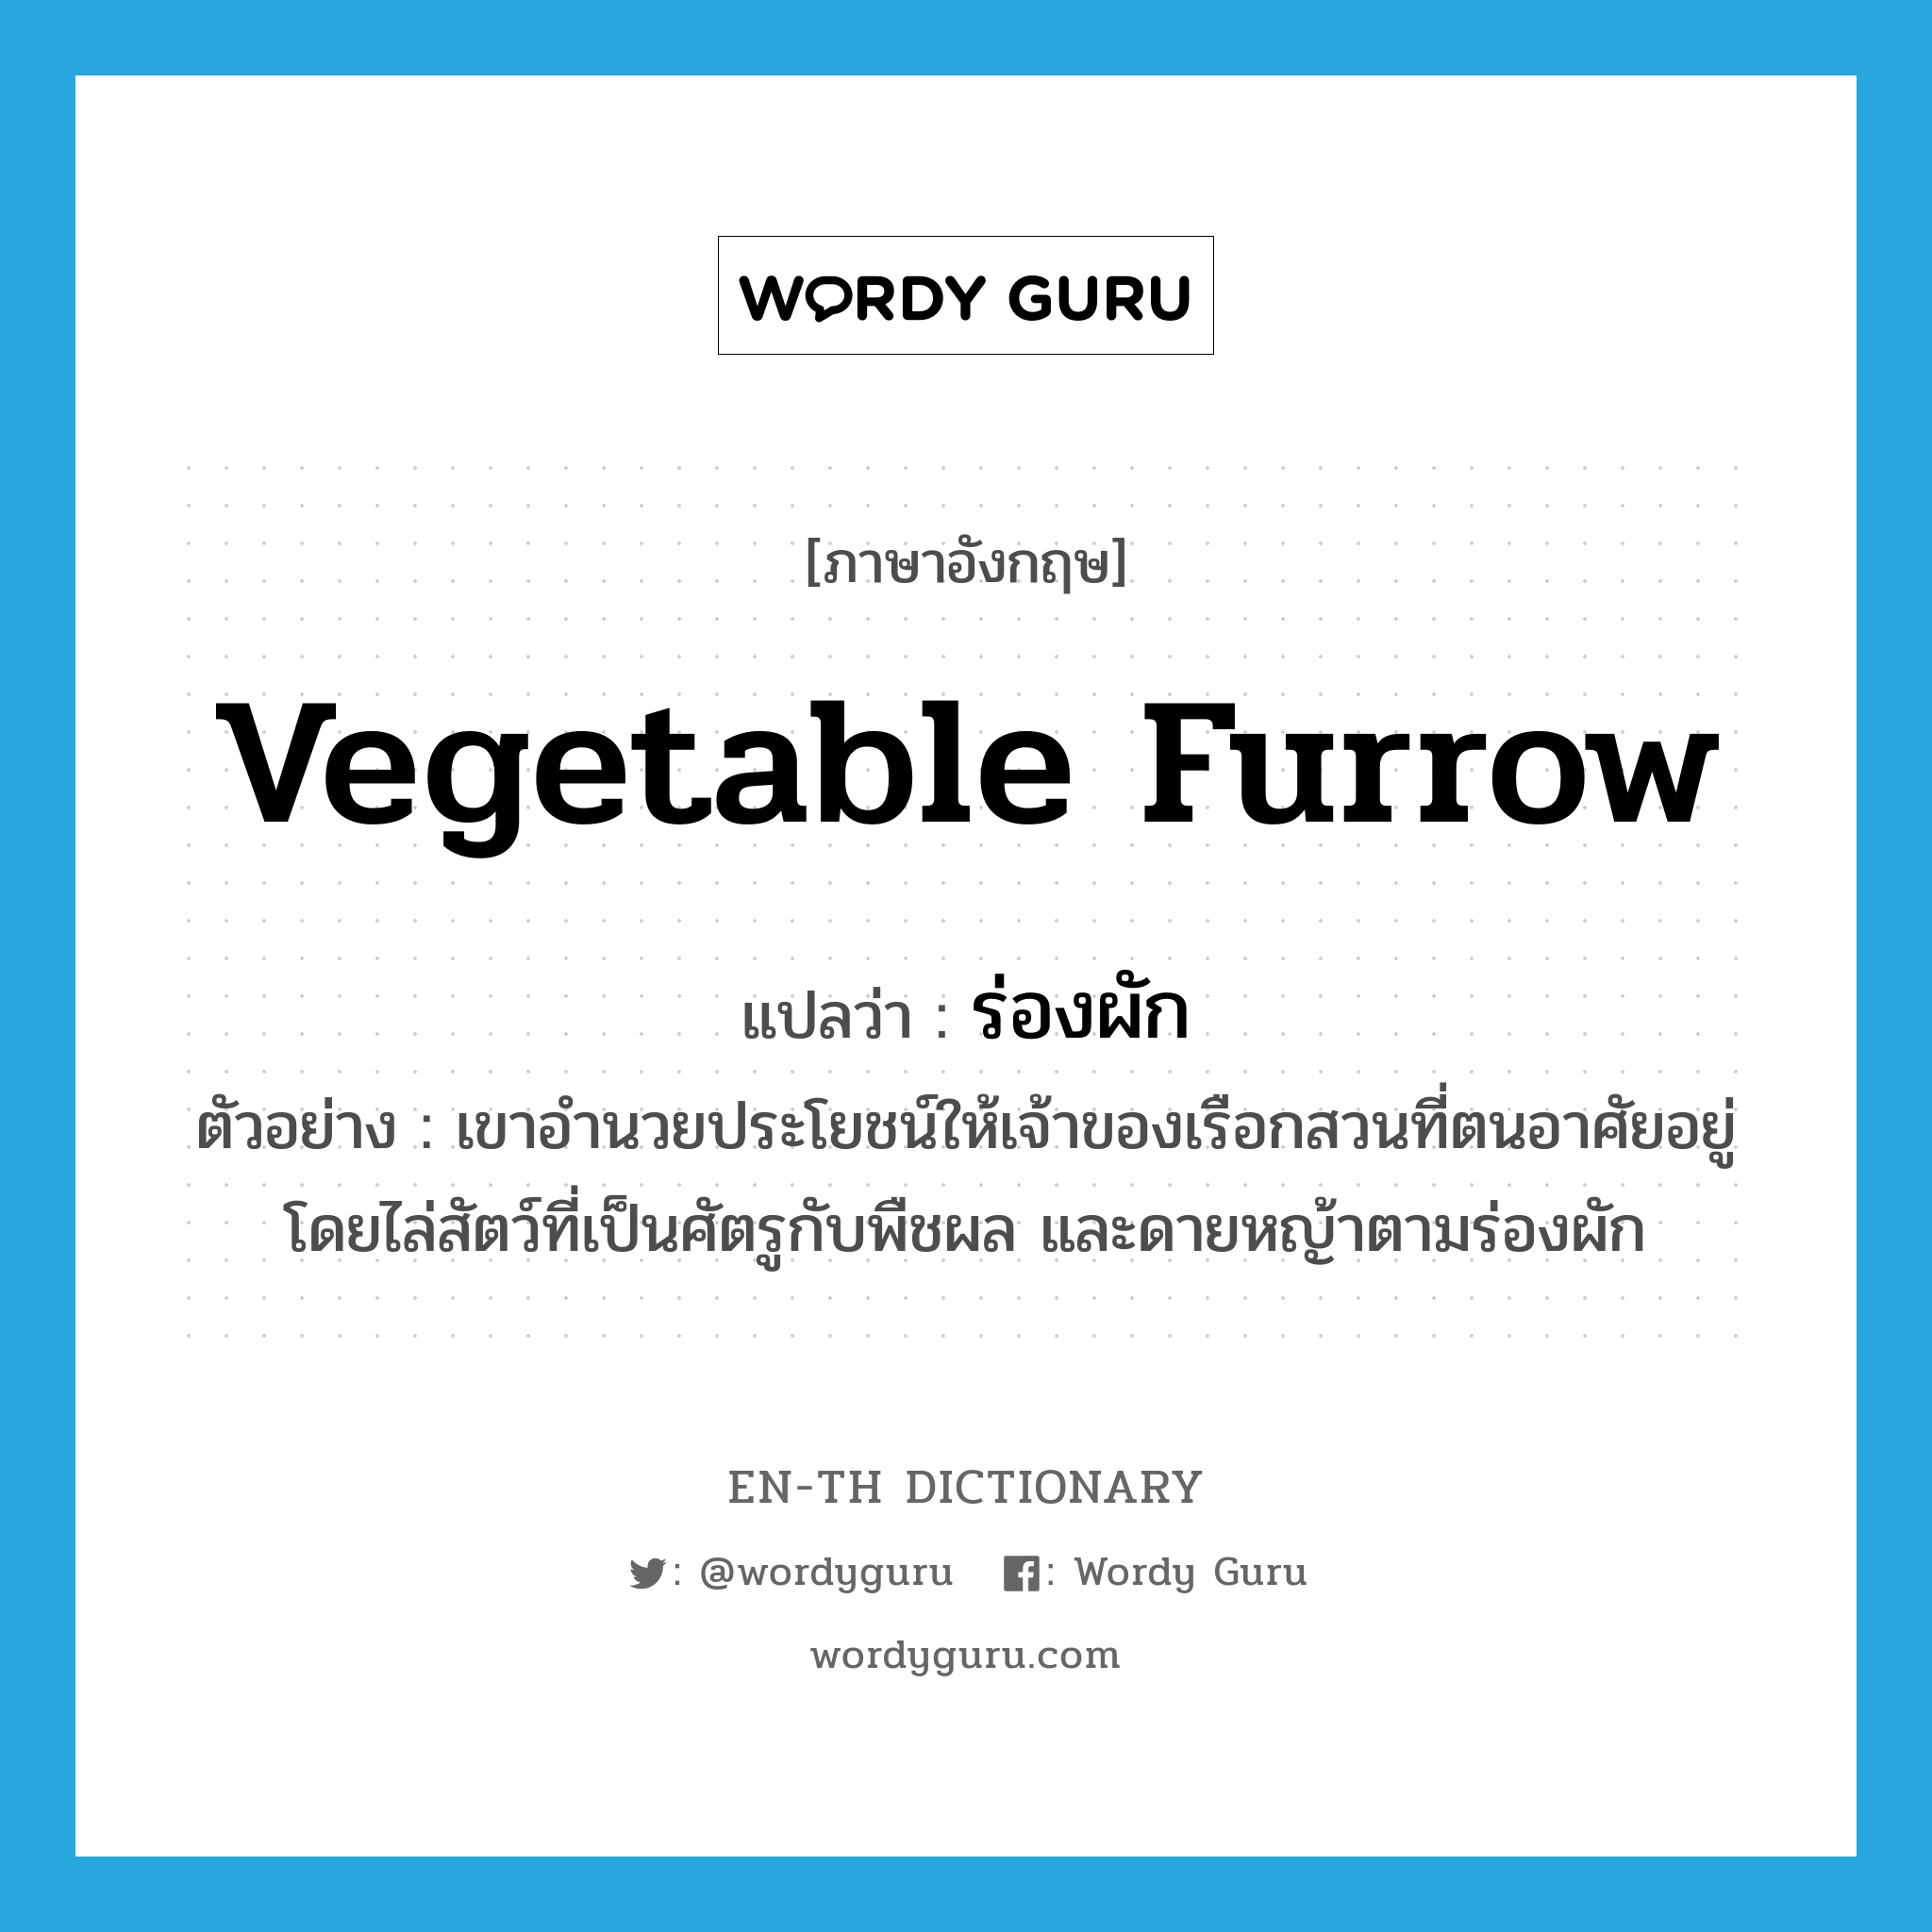 vegetable furrow แปลว่า?, คำศัพท์ภาษาอังกฤษ vegetable furrow แปลว่า ร่องผัก ประเภท N ตัวอย่าง เขาอำนวยประโยชน์ให้เจ้าของเรือกสวนที่ตนอาศัยอยู่ โดยไล่สัตว์ที่เป็นศัตรูกับพืชผล และดายหญ้าตามร่องผัก หมวด N